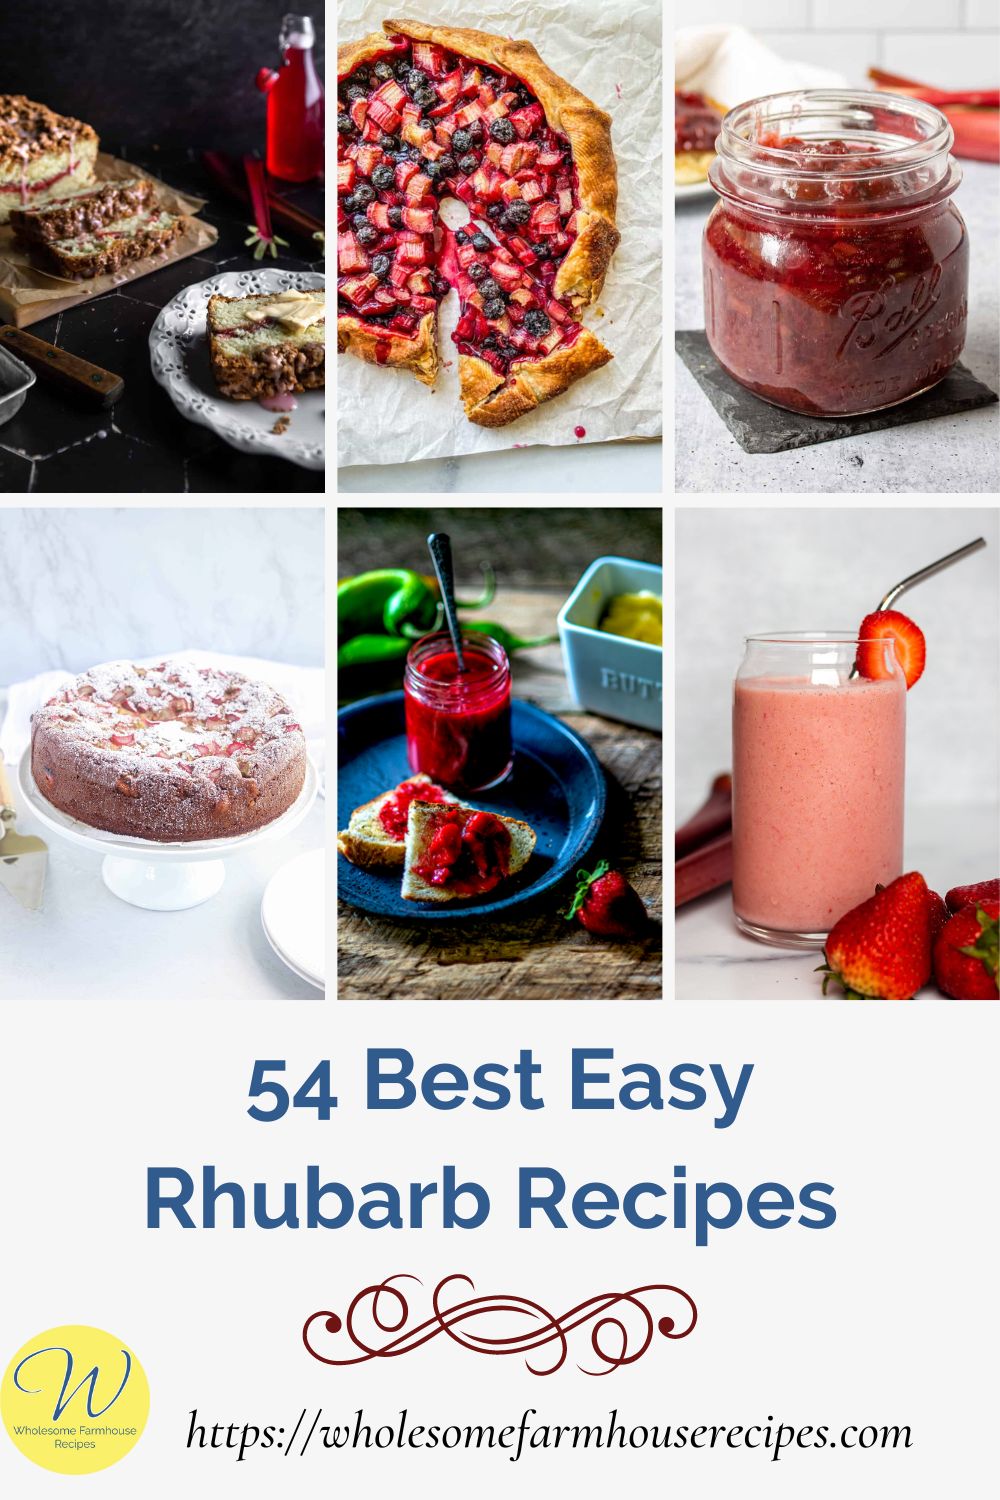 54 Best Easy Rhubarb Recipes